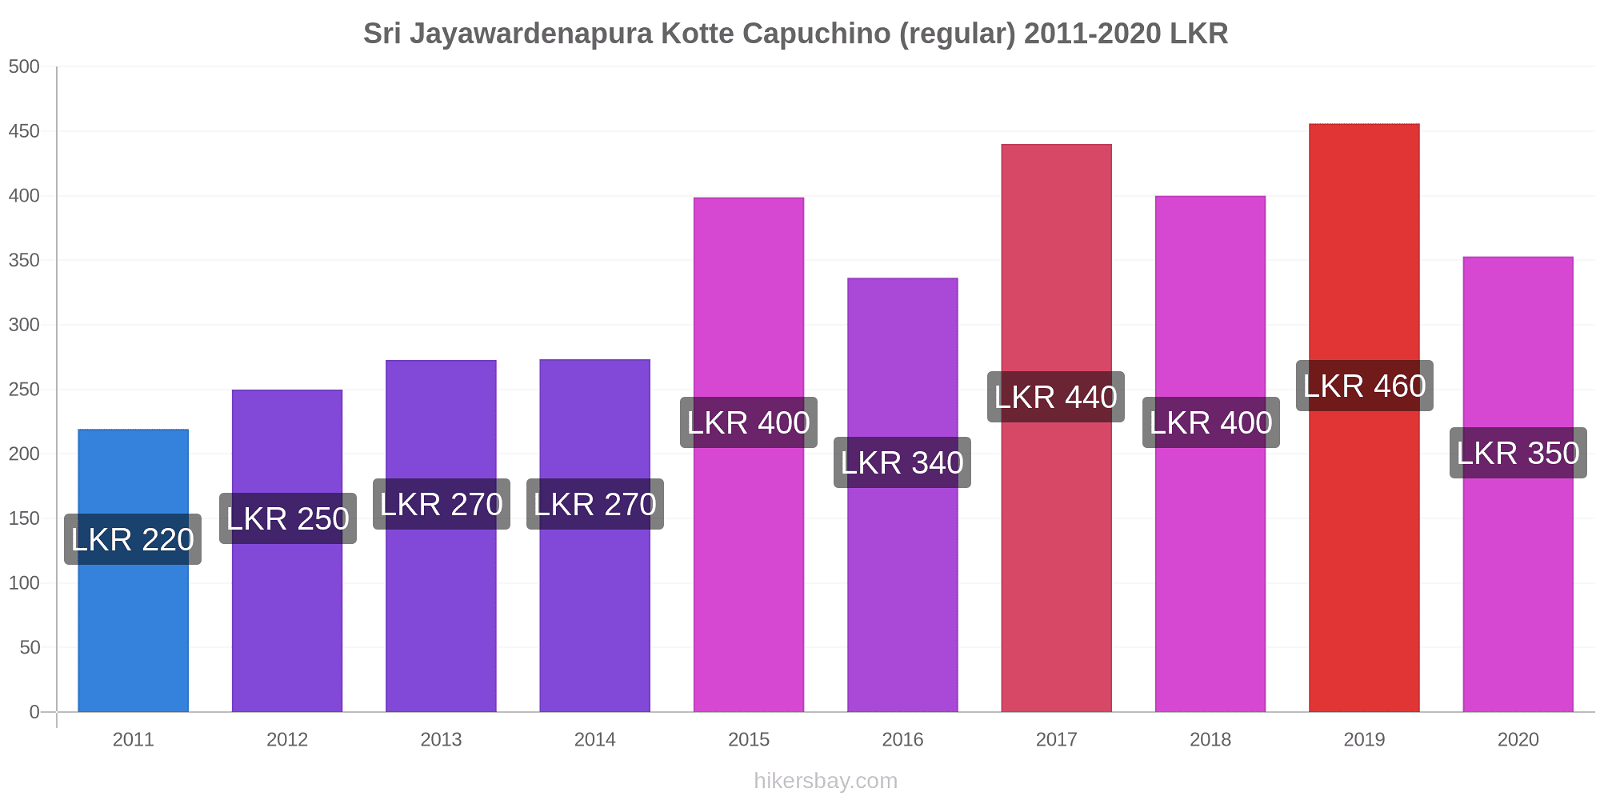 Sri Jayawardenapura Kotte cambios de precios Capuchino (regular) hikersbay.com